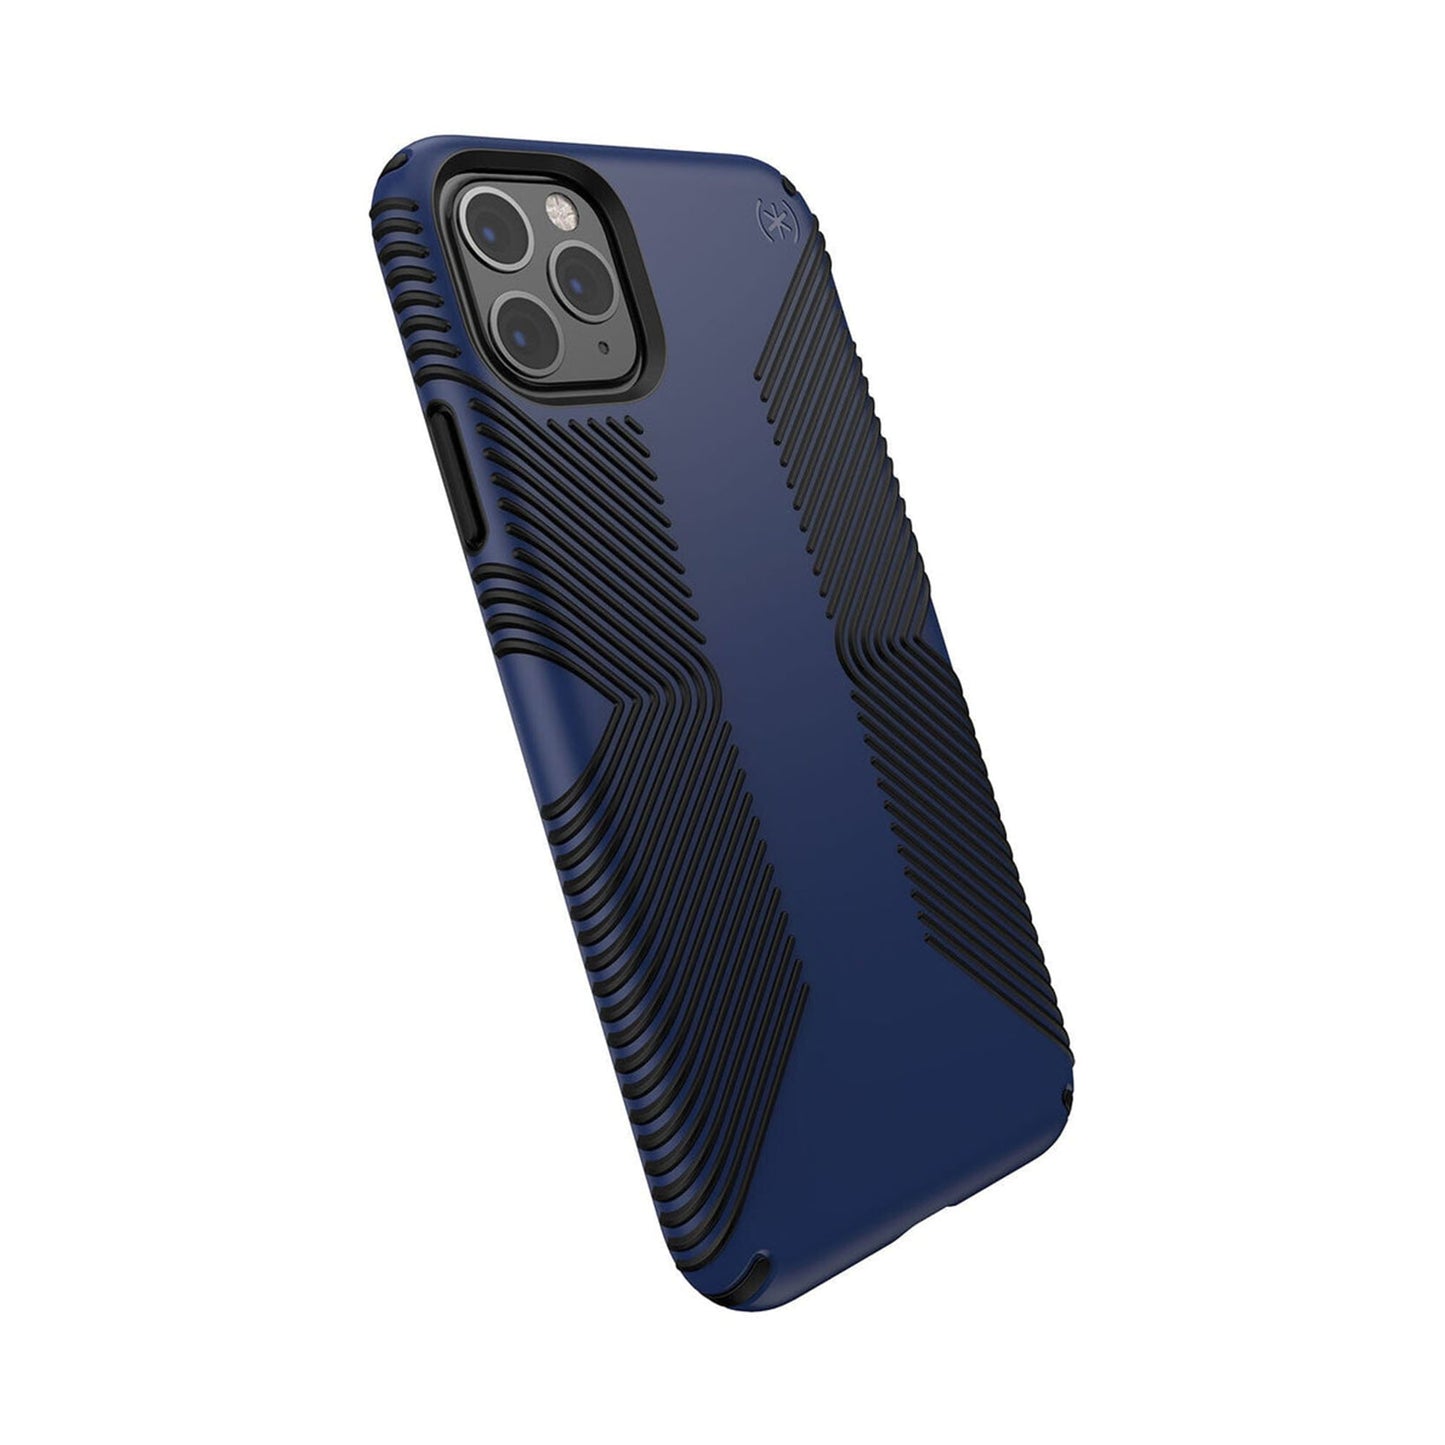 SPECK Presidio Pro Case for iPhone 11 Pro Max - Coastal Blue/Black